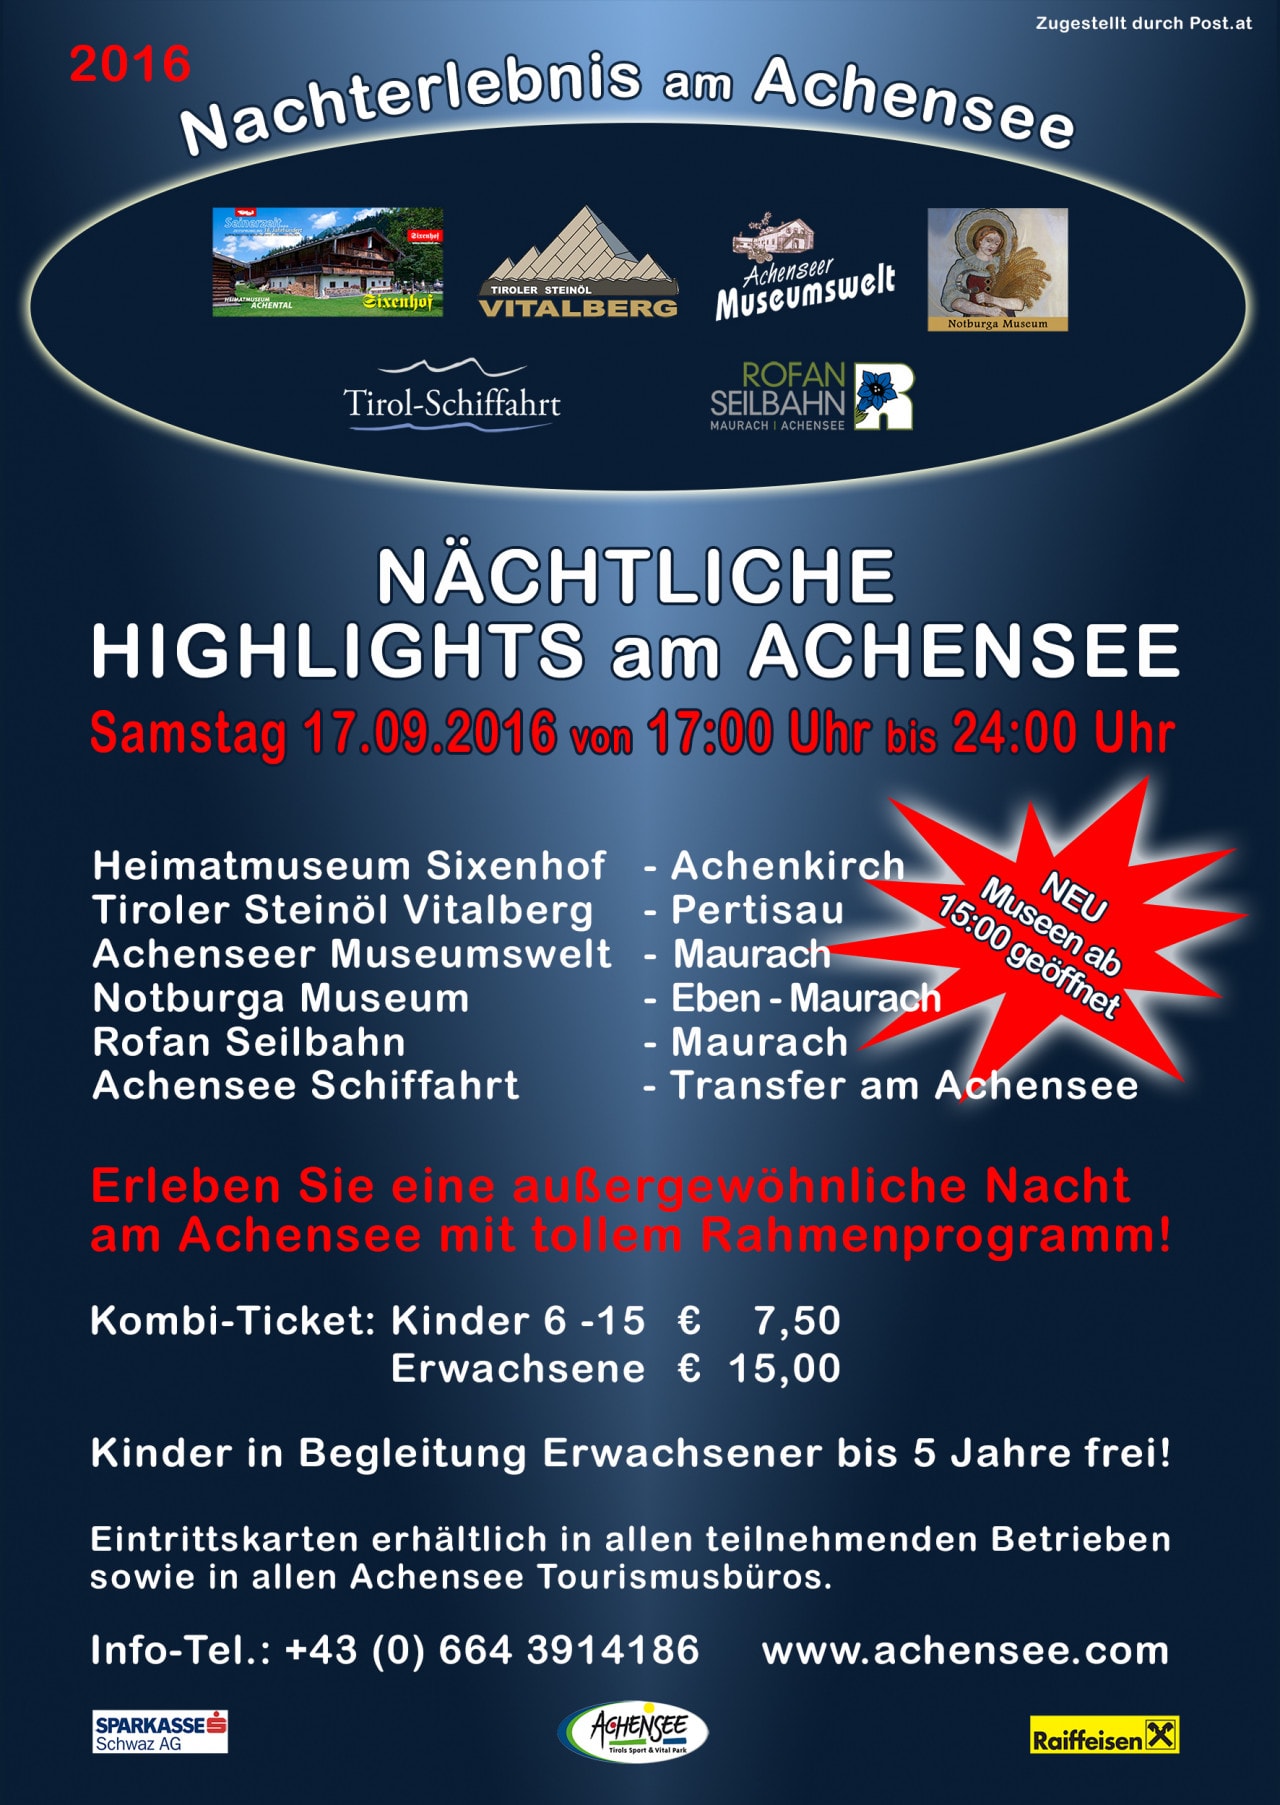 Nachterlebnis am Achensee A5 Flyer vorne 2016